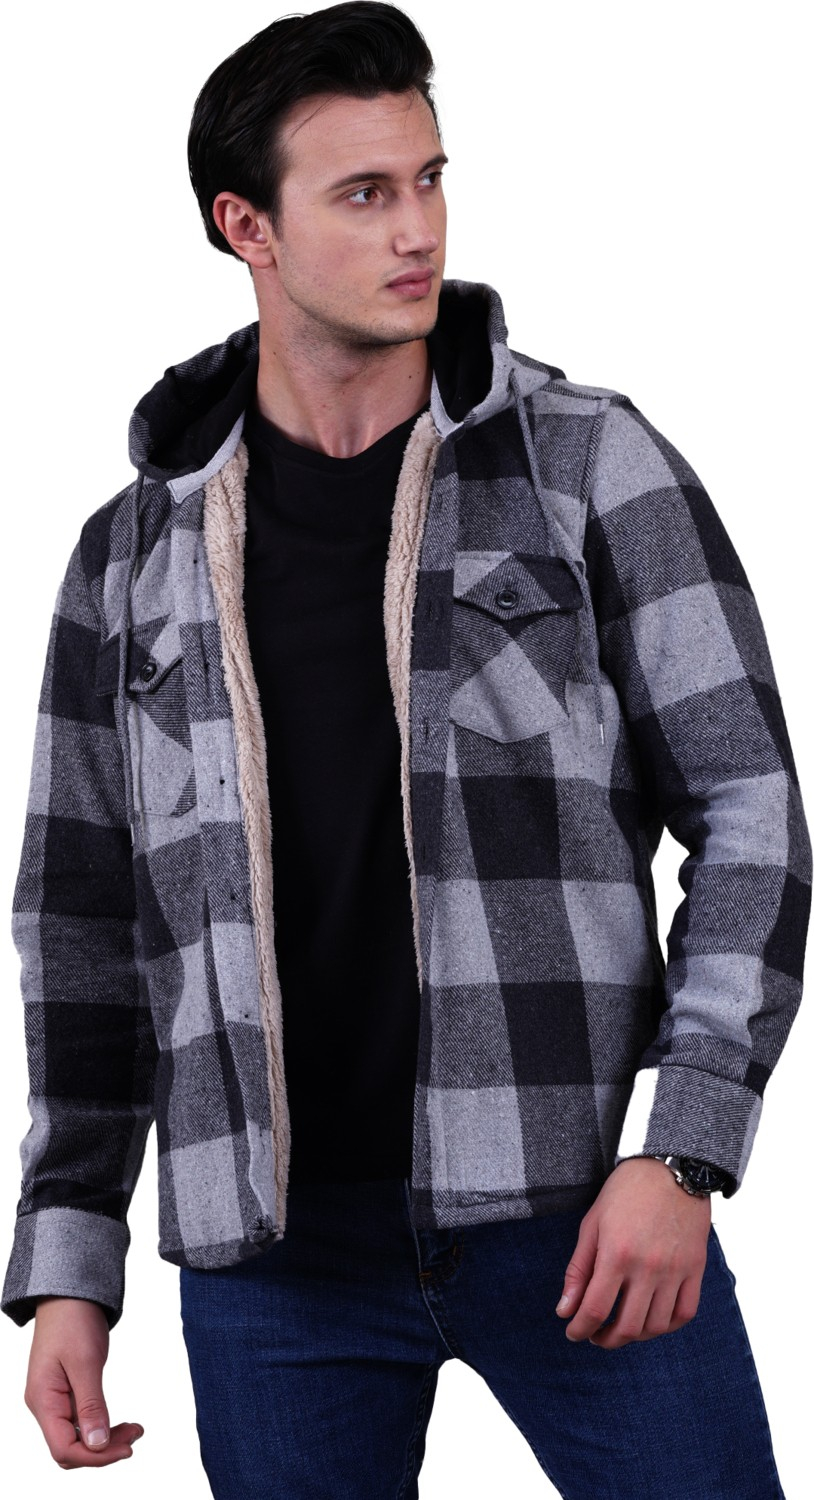 Эксклюзивная куртка-рубашка для зимнего лесоруба Exve в клетку хаки-серого цвета с капюшоном и подкладкой из меха